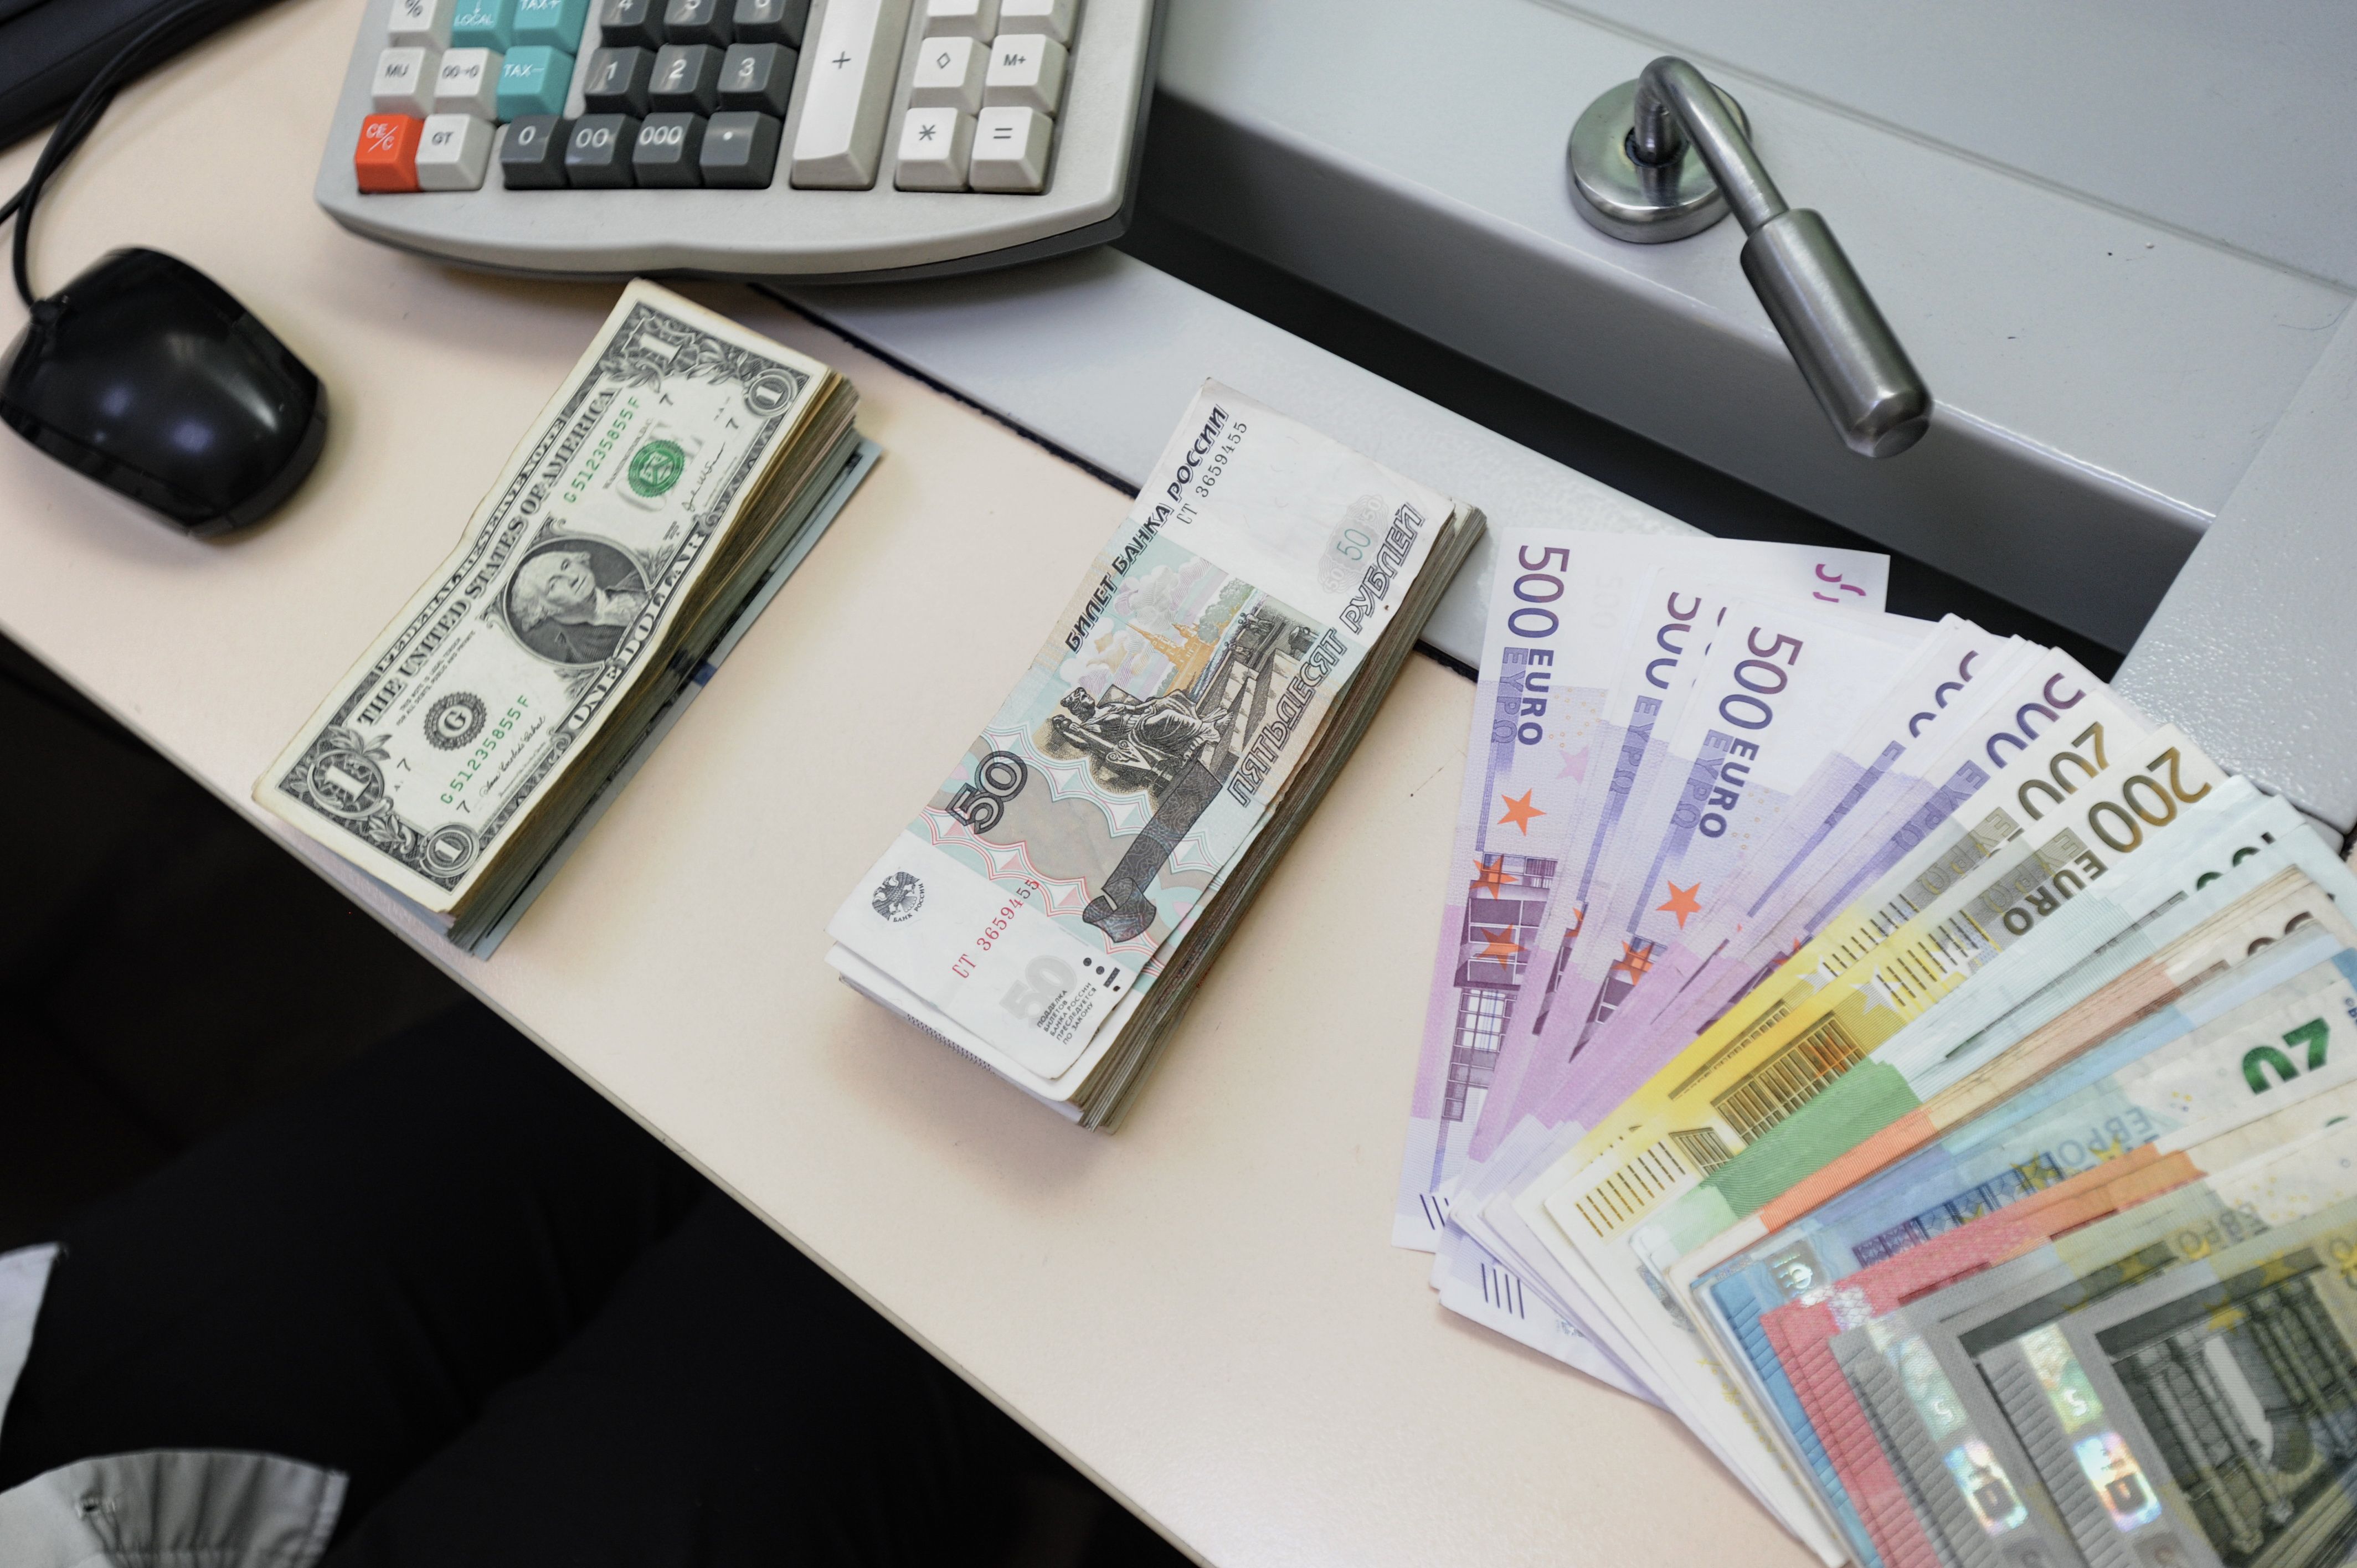 Белорусский банк валюты